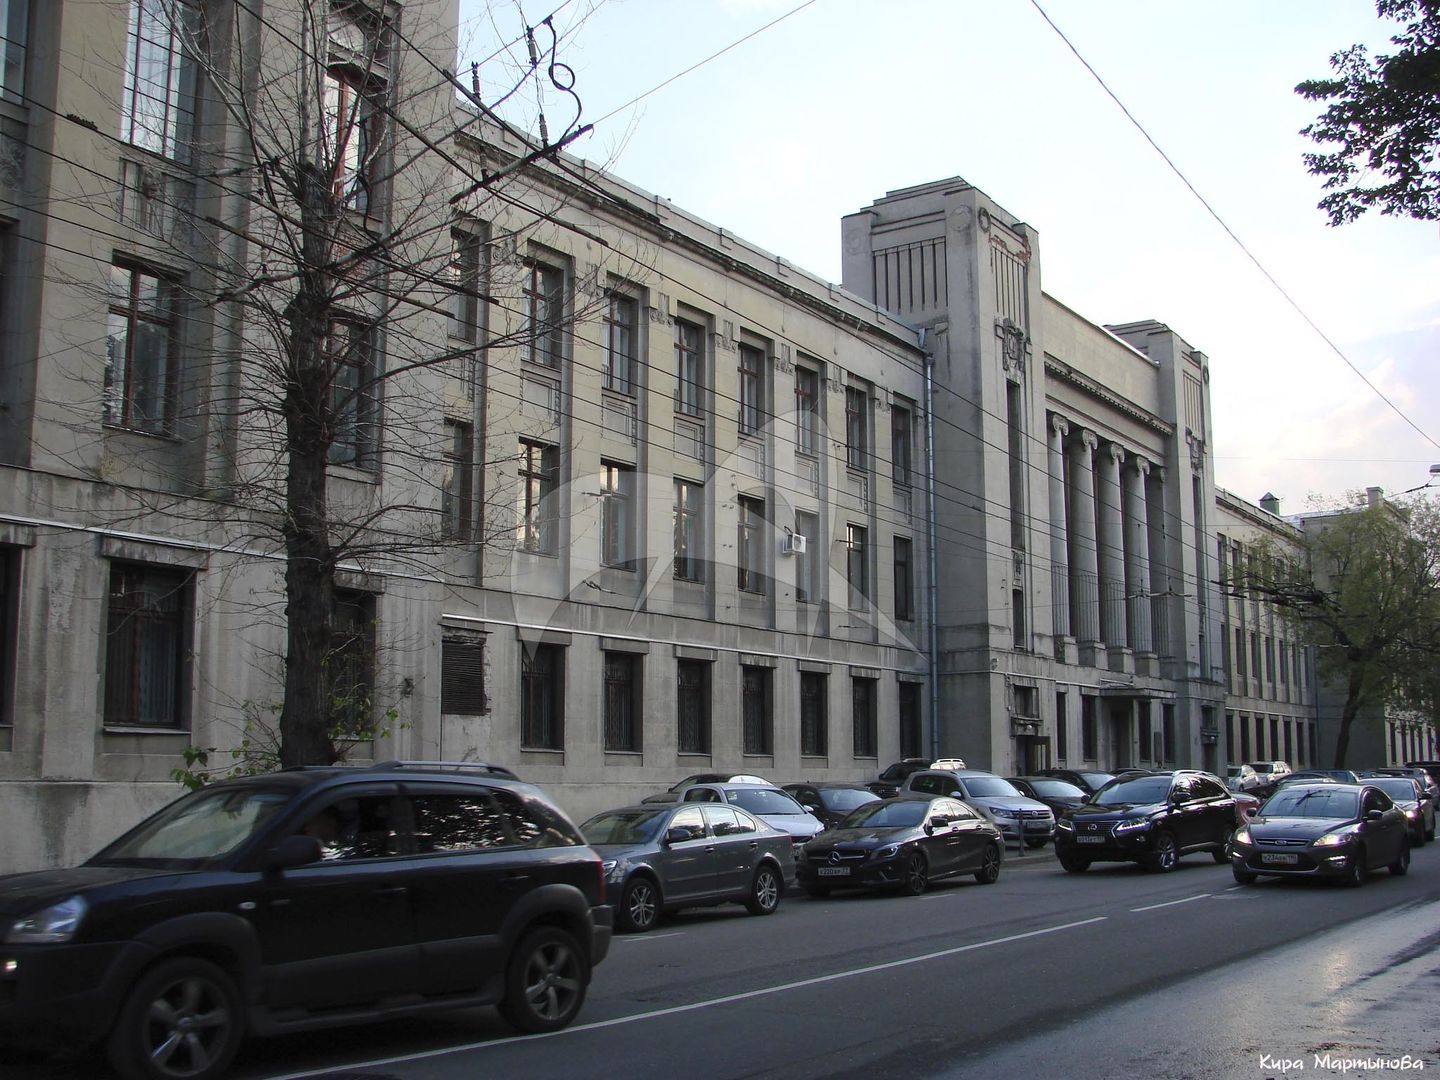 Здание Университета Шанявского, 1930-е гг., арх. Е.В. Шервинский